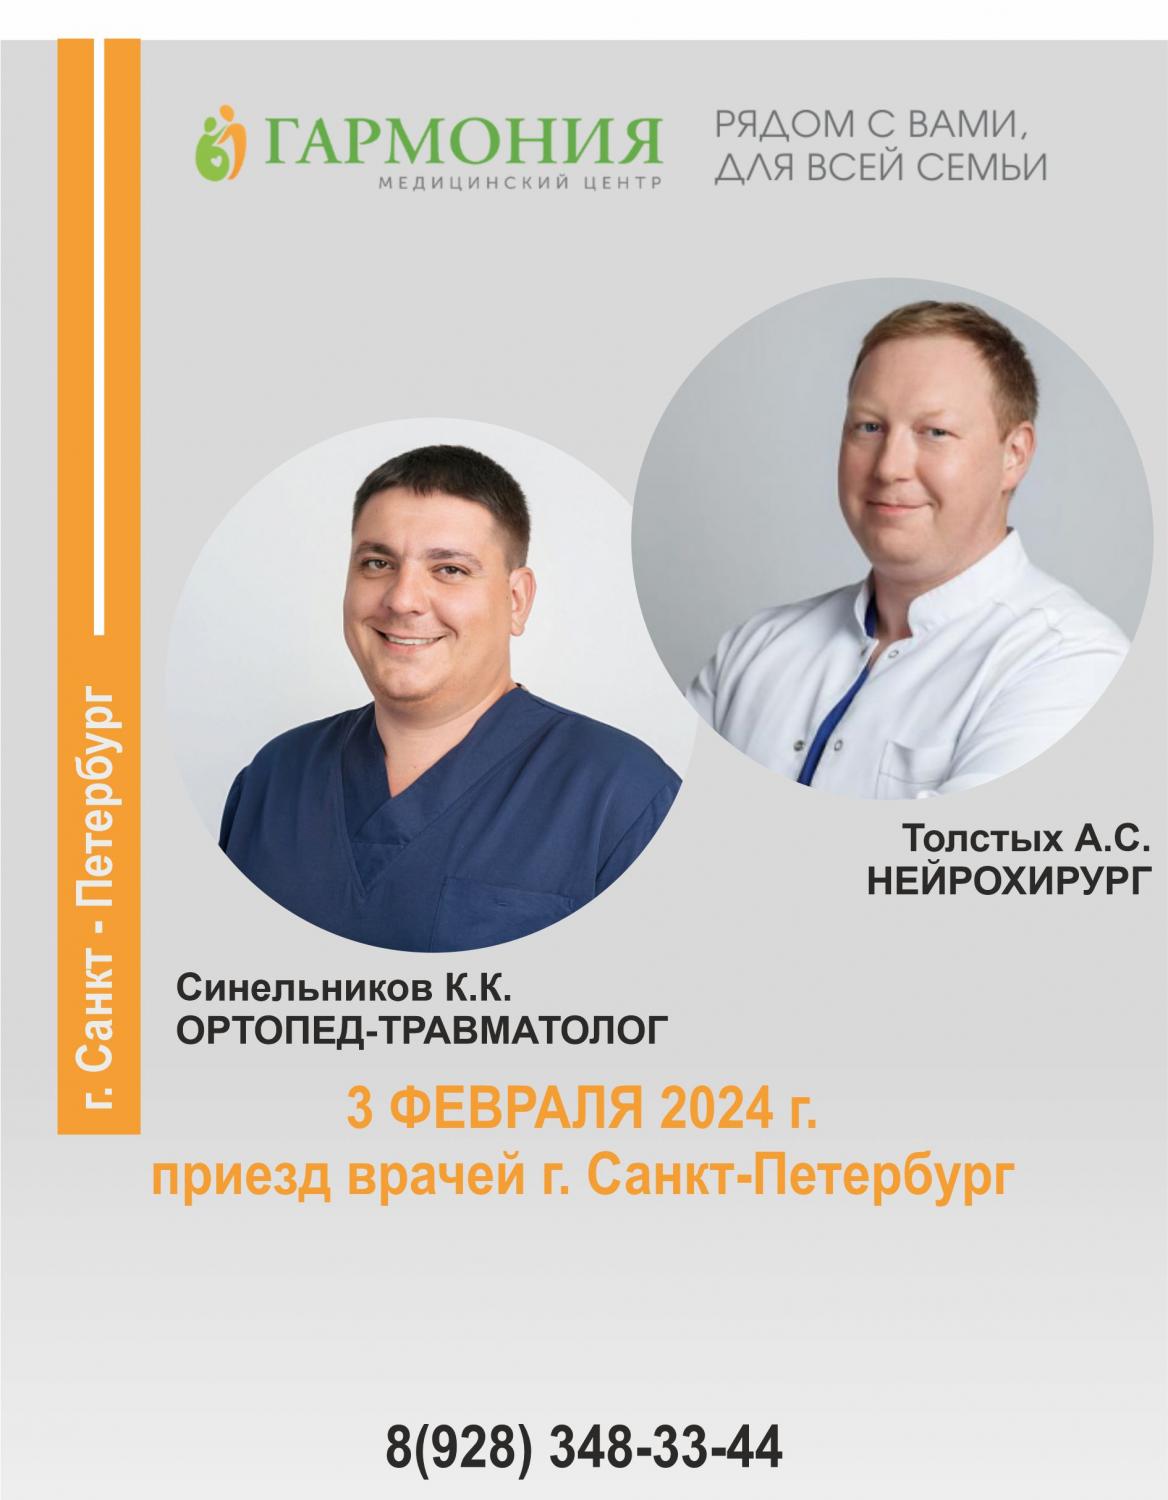 Приём ведущих специалистов  клиники «Скандинавия» г. Санкт-Петербург.